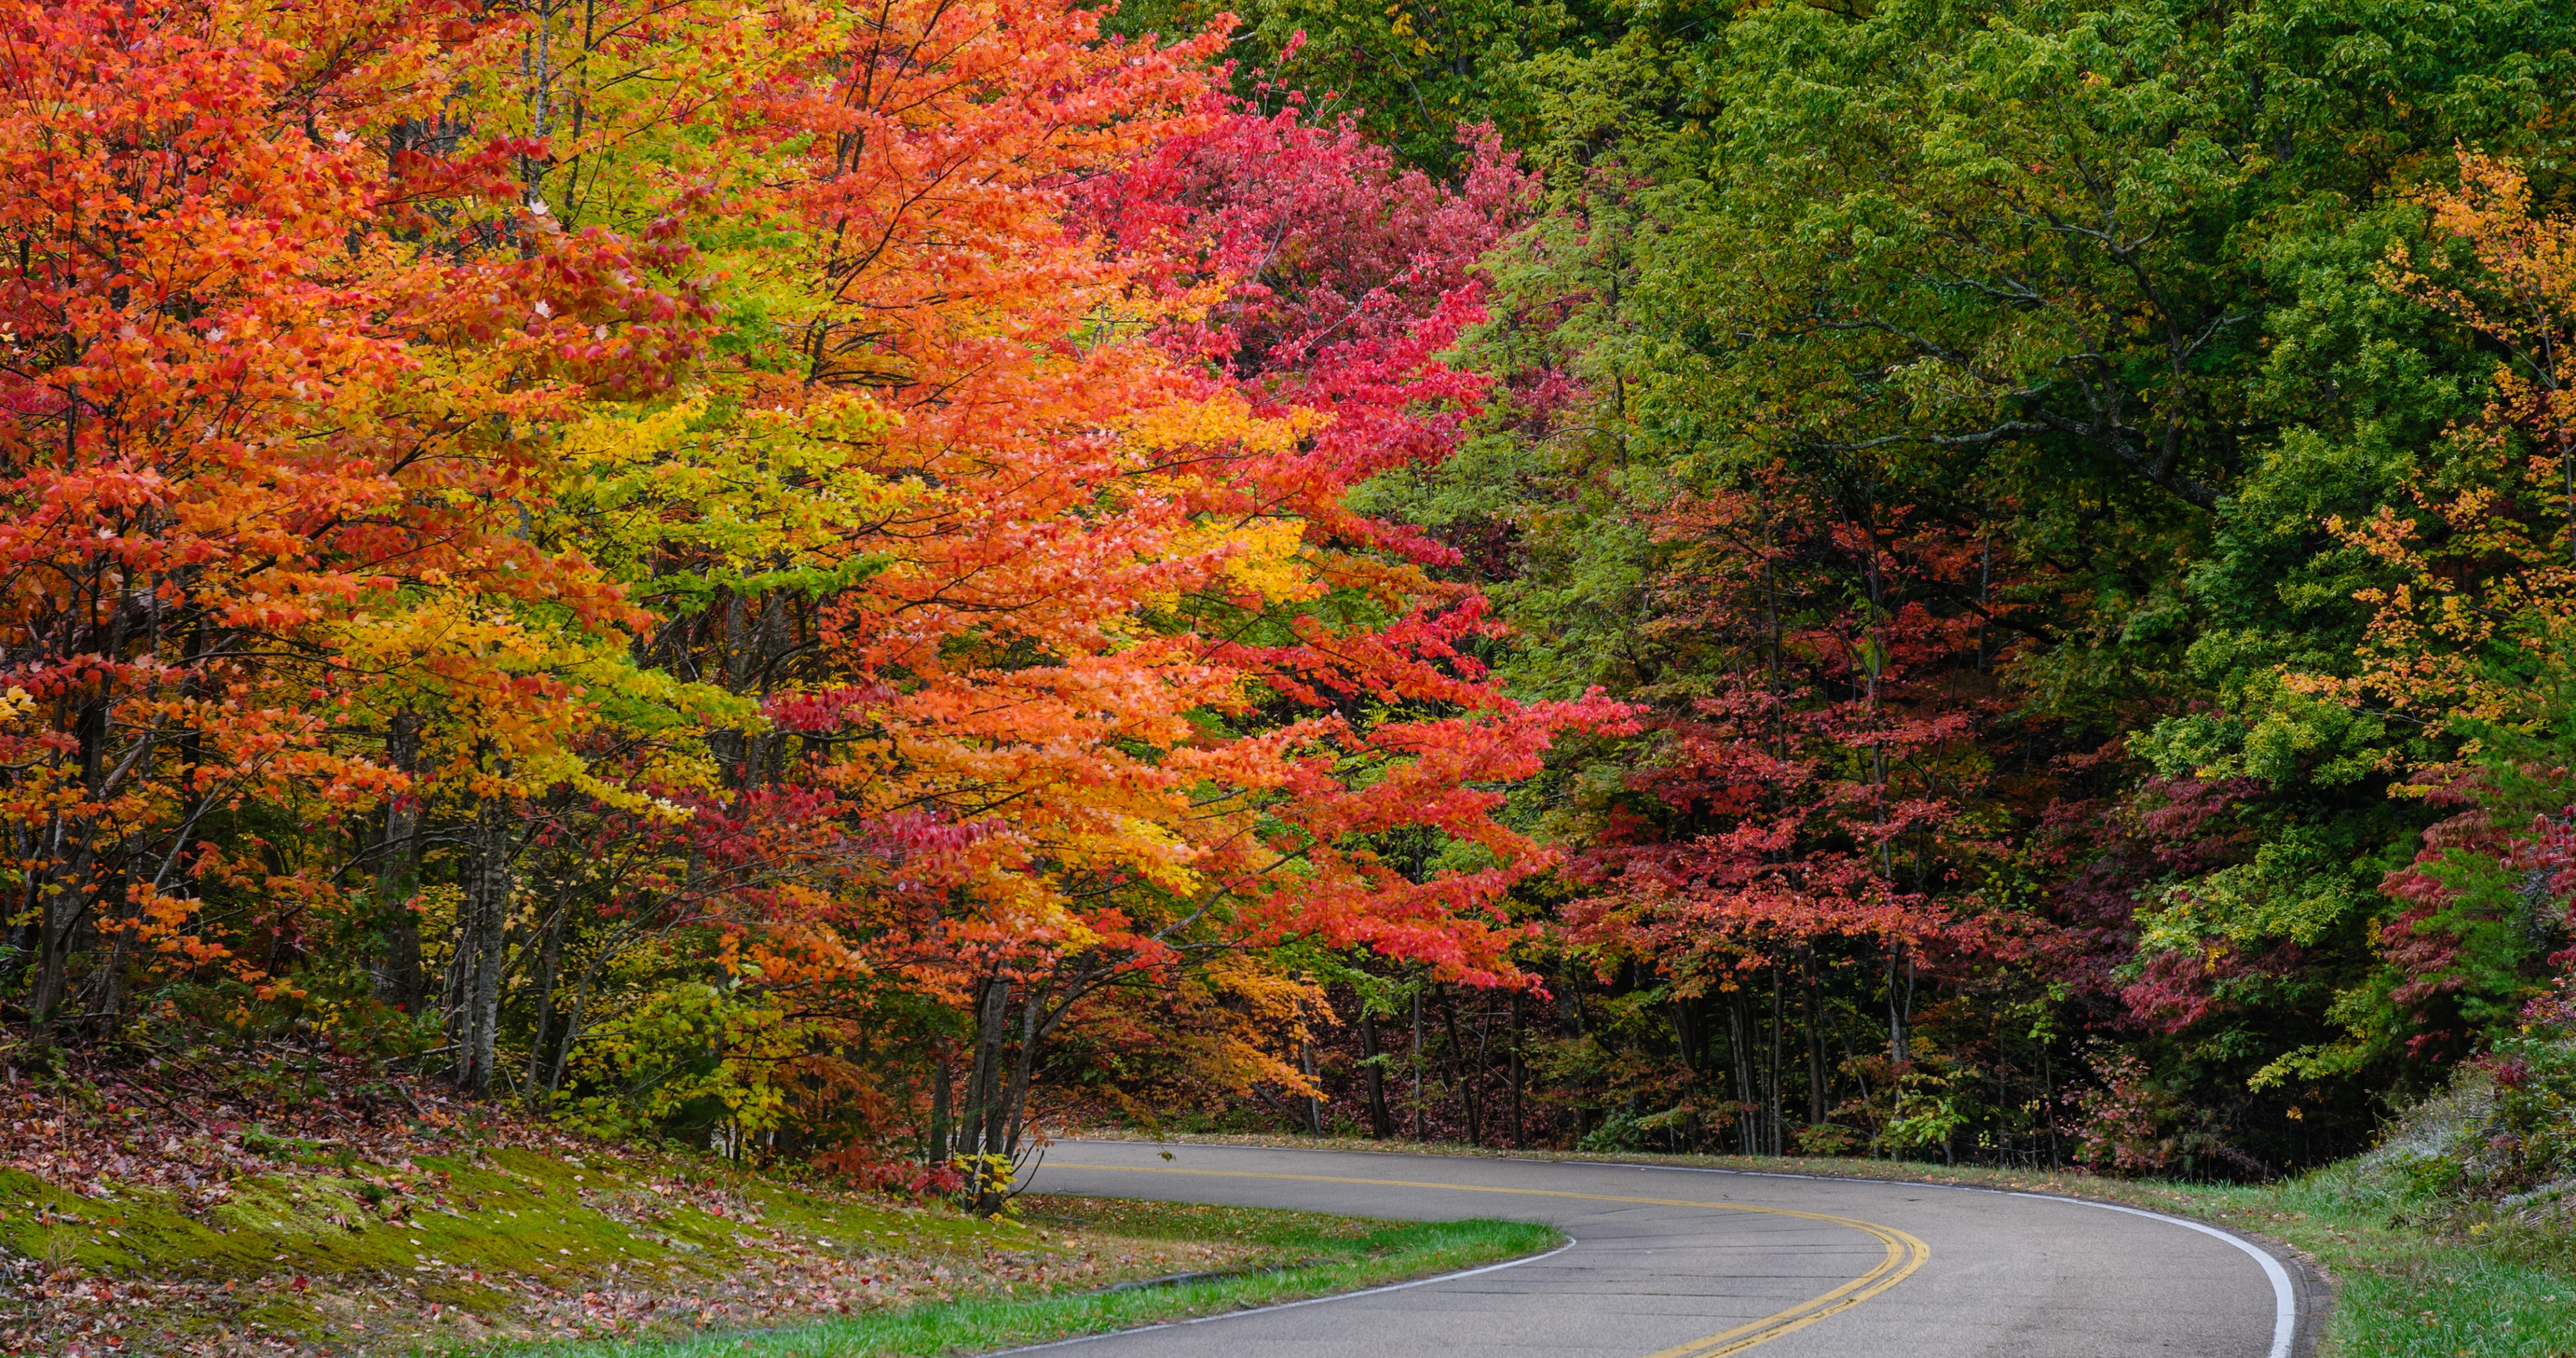 Обои на рабочий стол дорога, осень, road, landscape, autumn, tree, nature, leaves, деревья, листья, парк